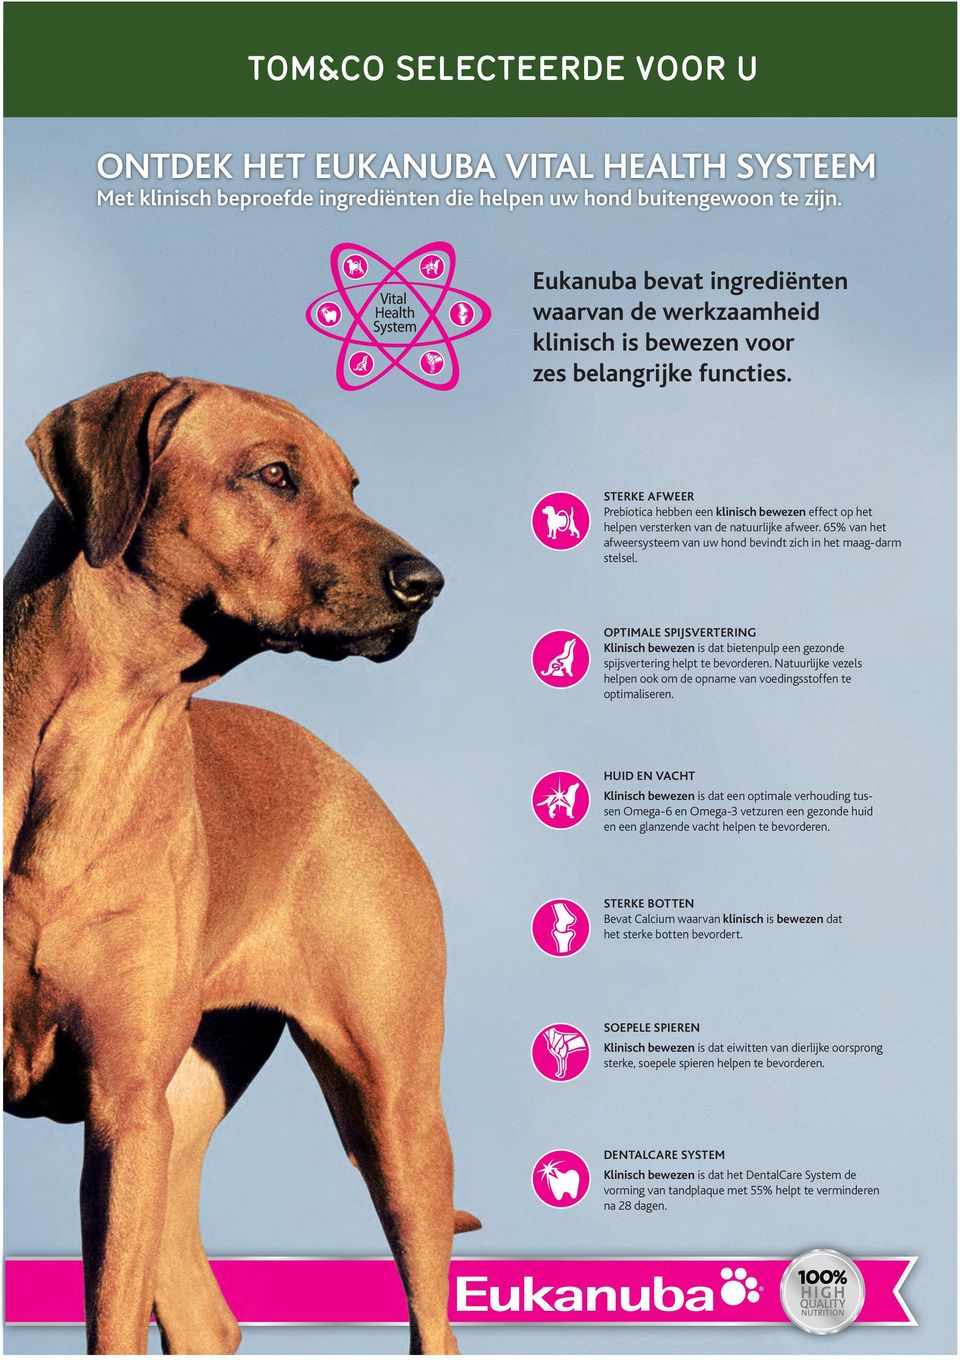 DEFENSES STERKE AFWEER Prebiotica hebben een klinisch bewezen effect op het helpen versterken van de natuurlijke afweer. 65% van het afweersysteem van uw hond bevindt zich in het maag-darm stelsel.